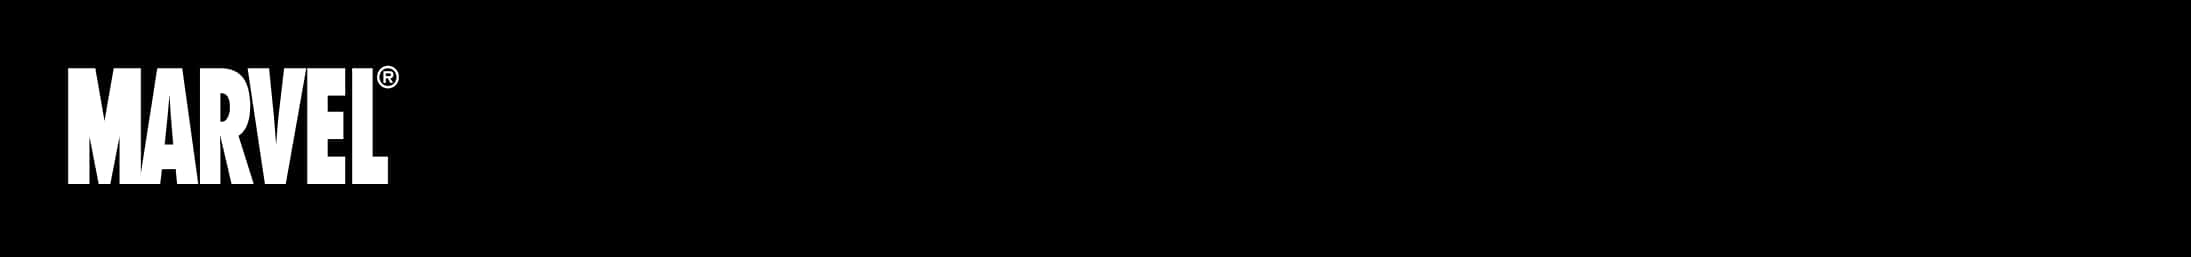 Marvel Logo Black Background PNG